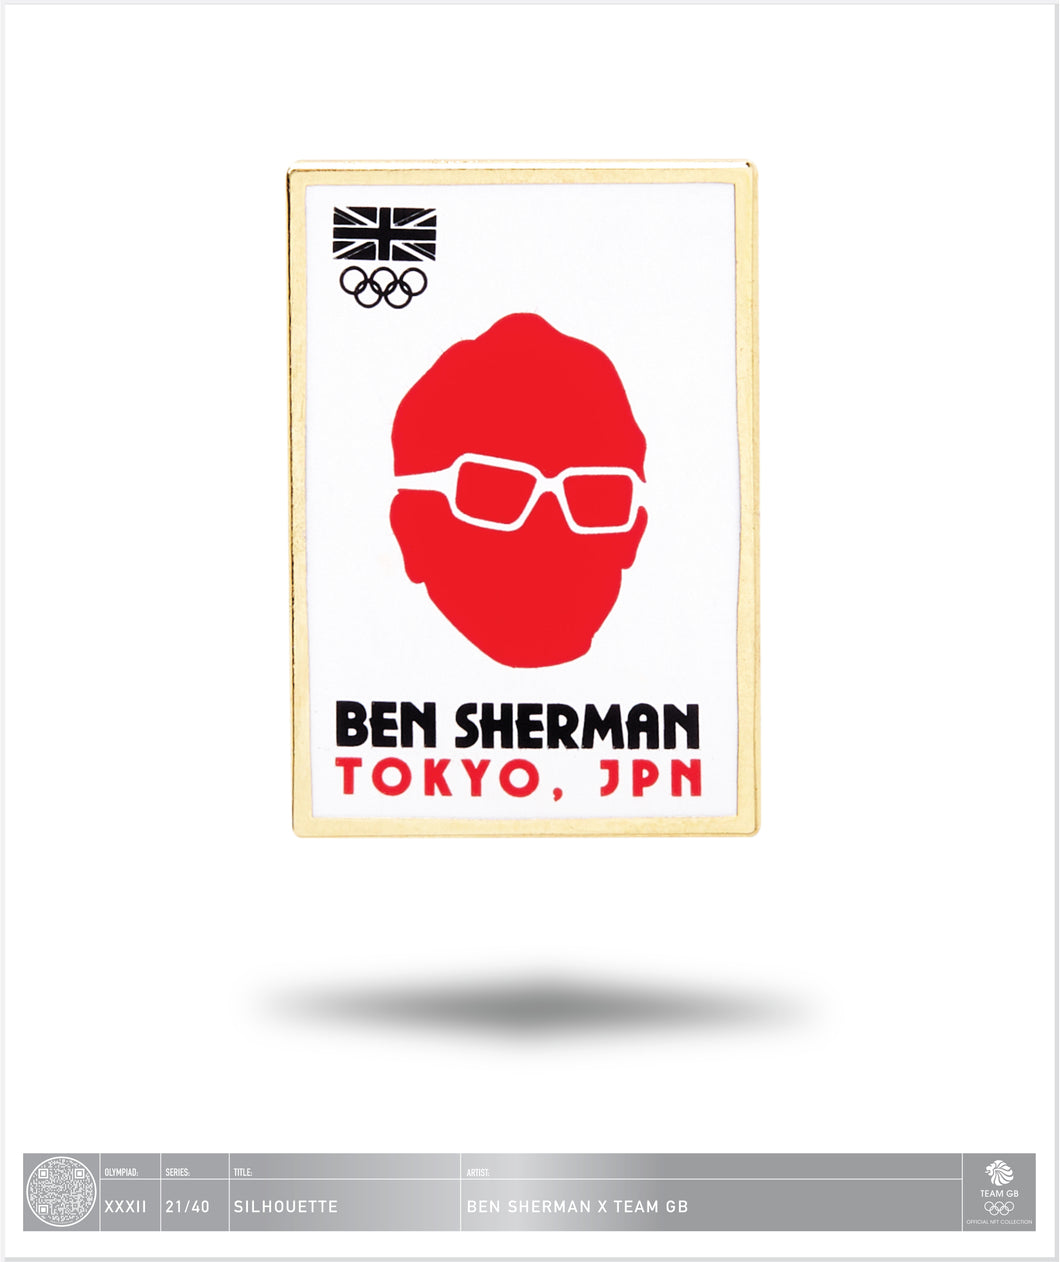 Ben Sherman Tokyo - Silhouette - 21 / 40